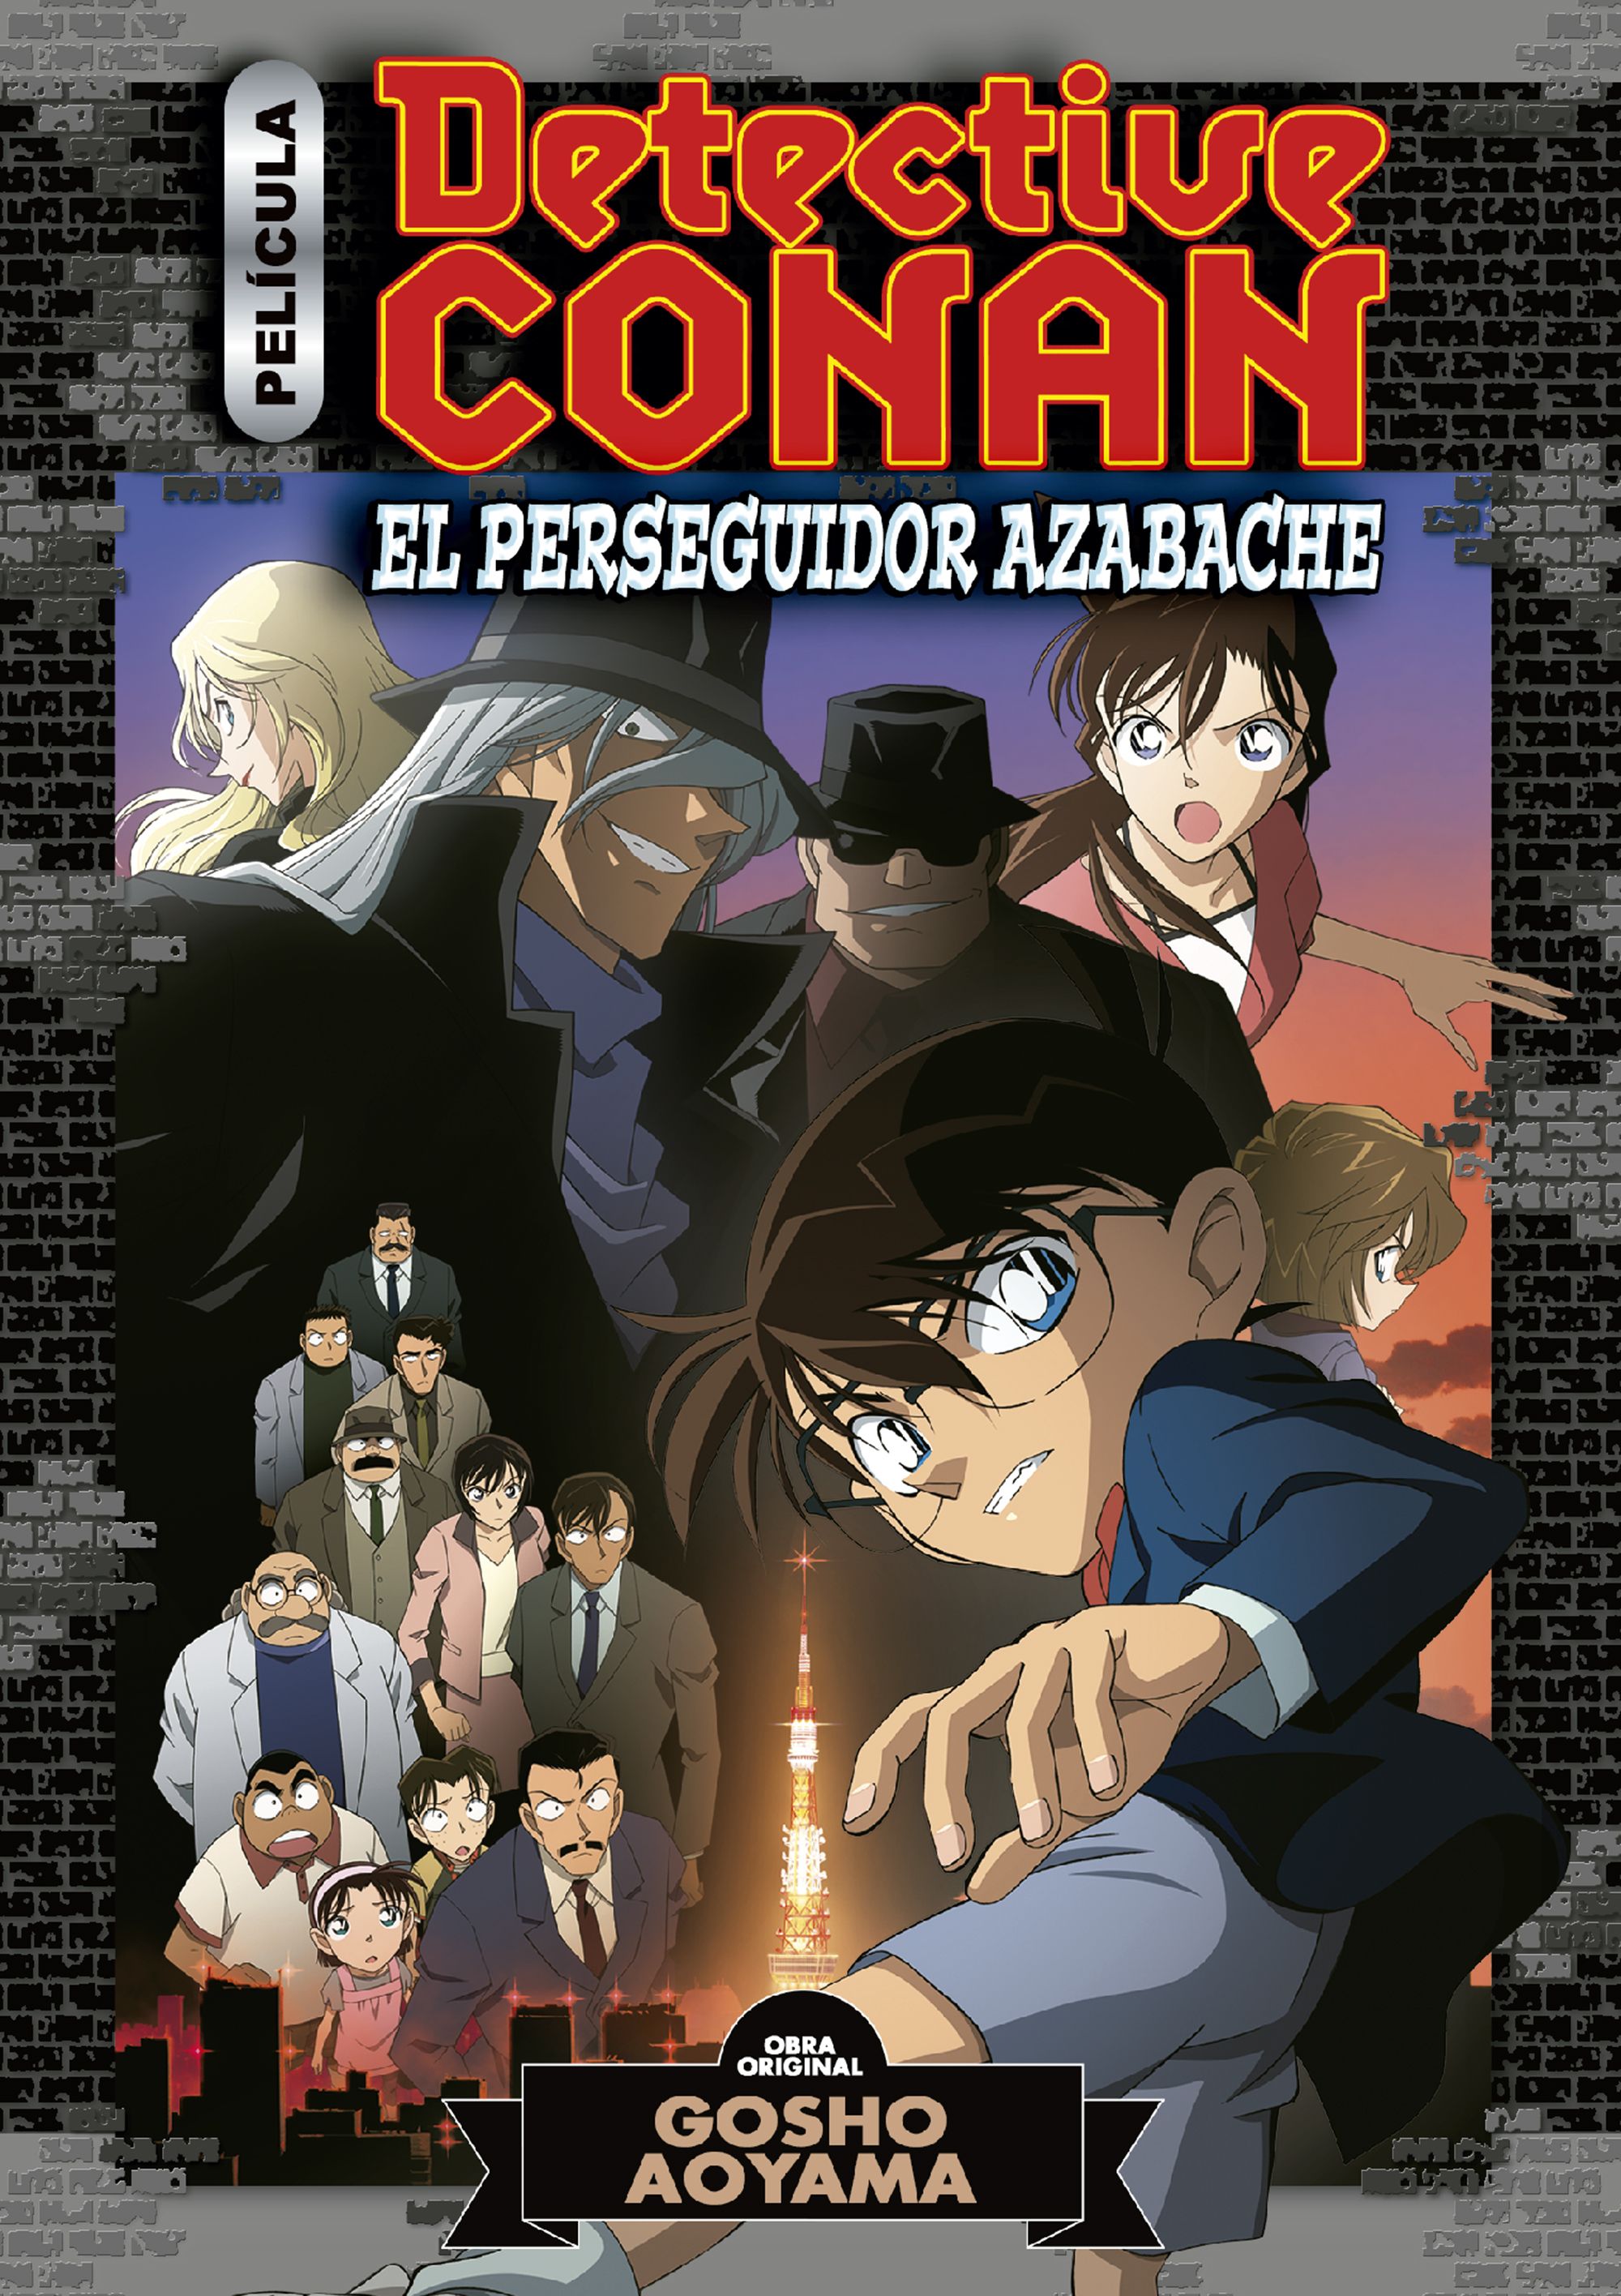 Detective Conan Anime Comic # 04: El perseguidor azabache